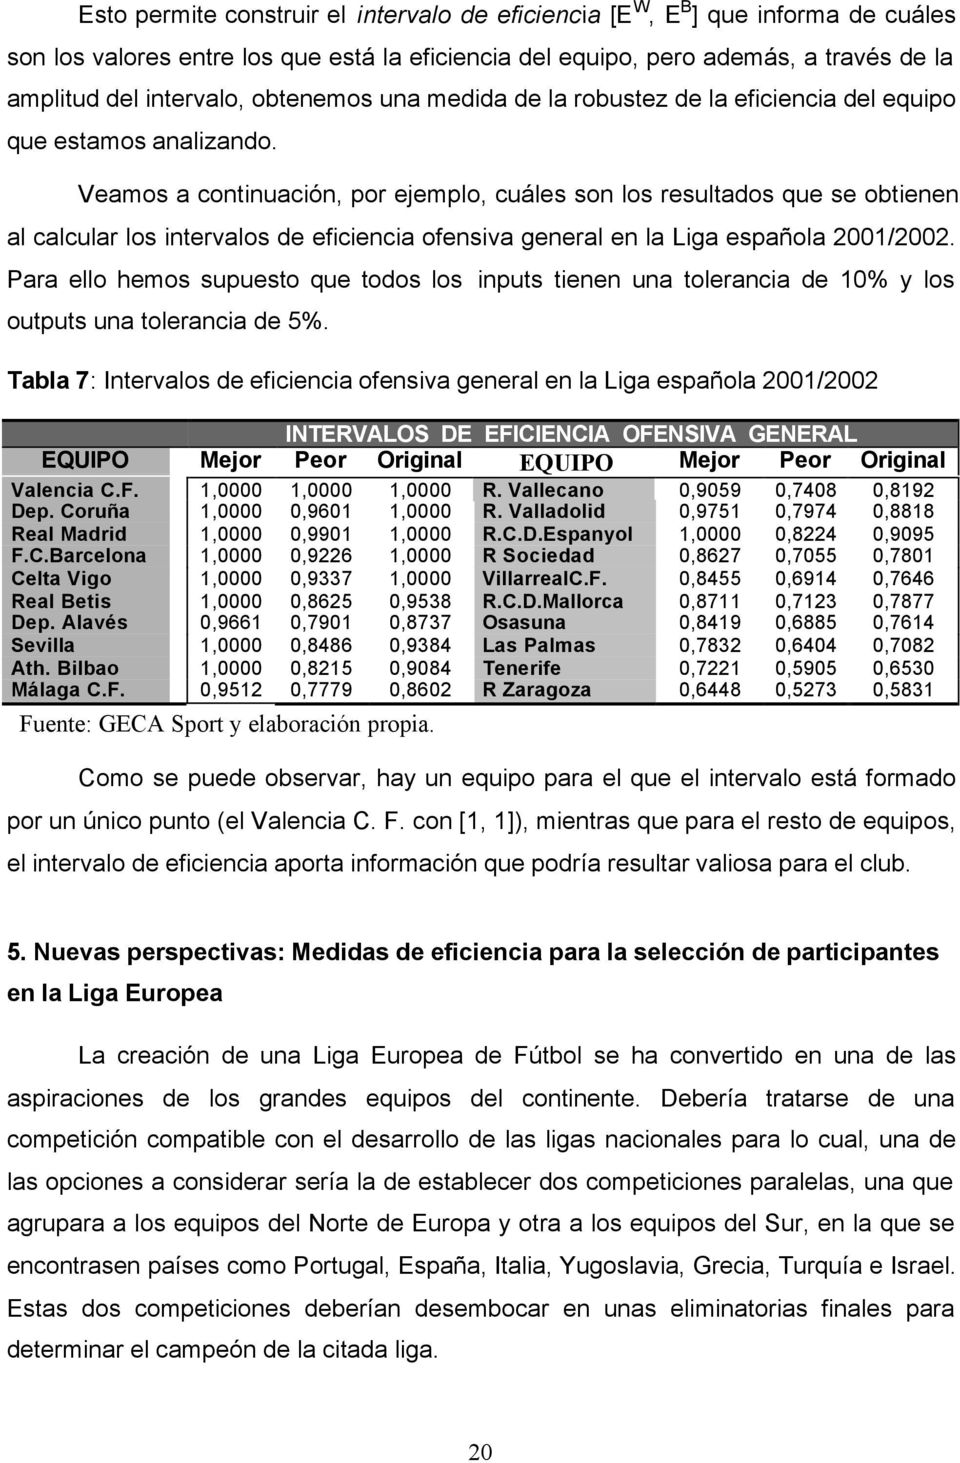 Veamos a continuación, por ejemplo, cuáles son los resultados que se obtienen al calcular los intervalos de eficiencia ofensiva general en la Liga española 2001/2002.